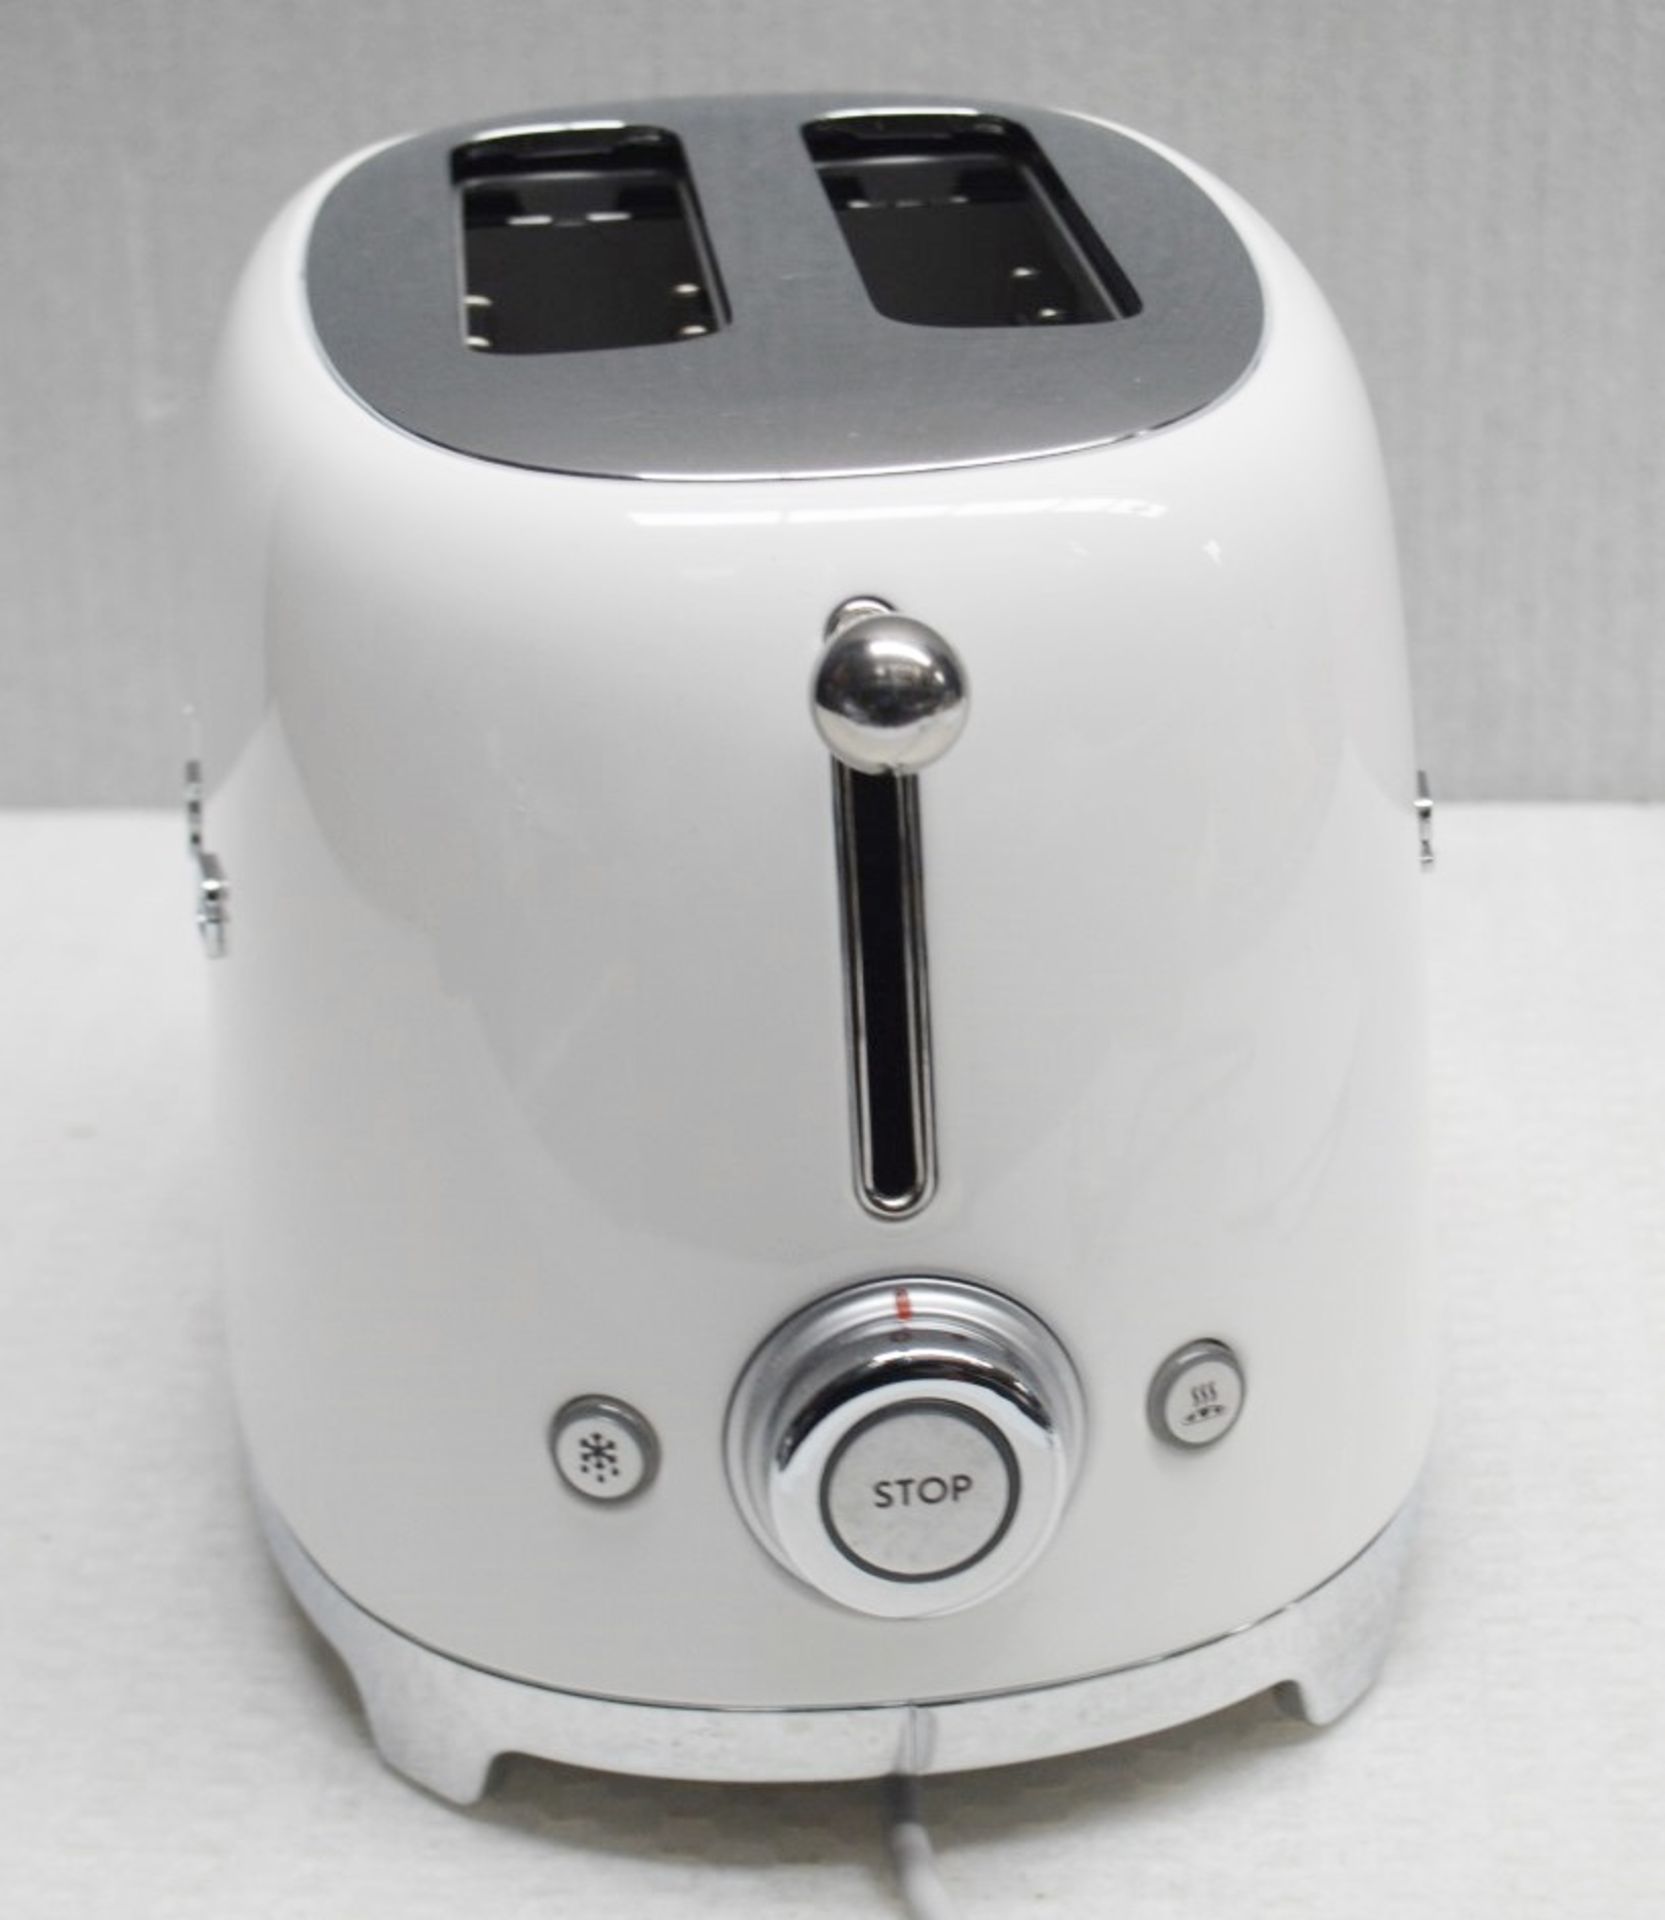 1 x SMEG Retro-style 2-Slot Toaster In White - Original Price £139.95 - Image 7 of 7